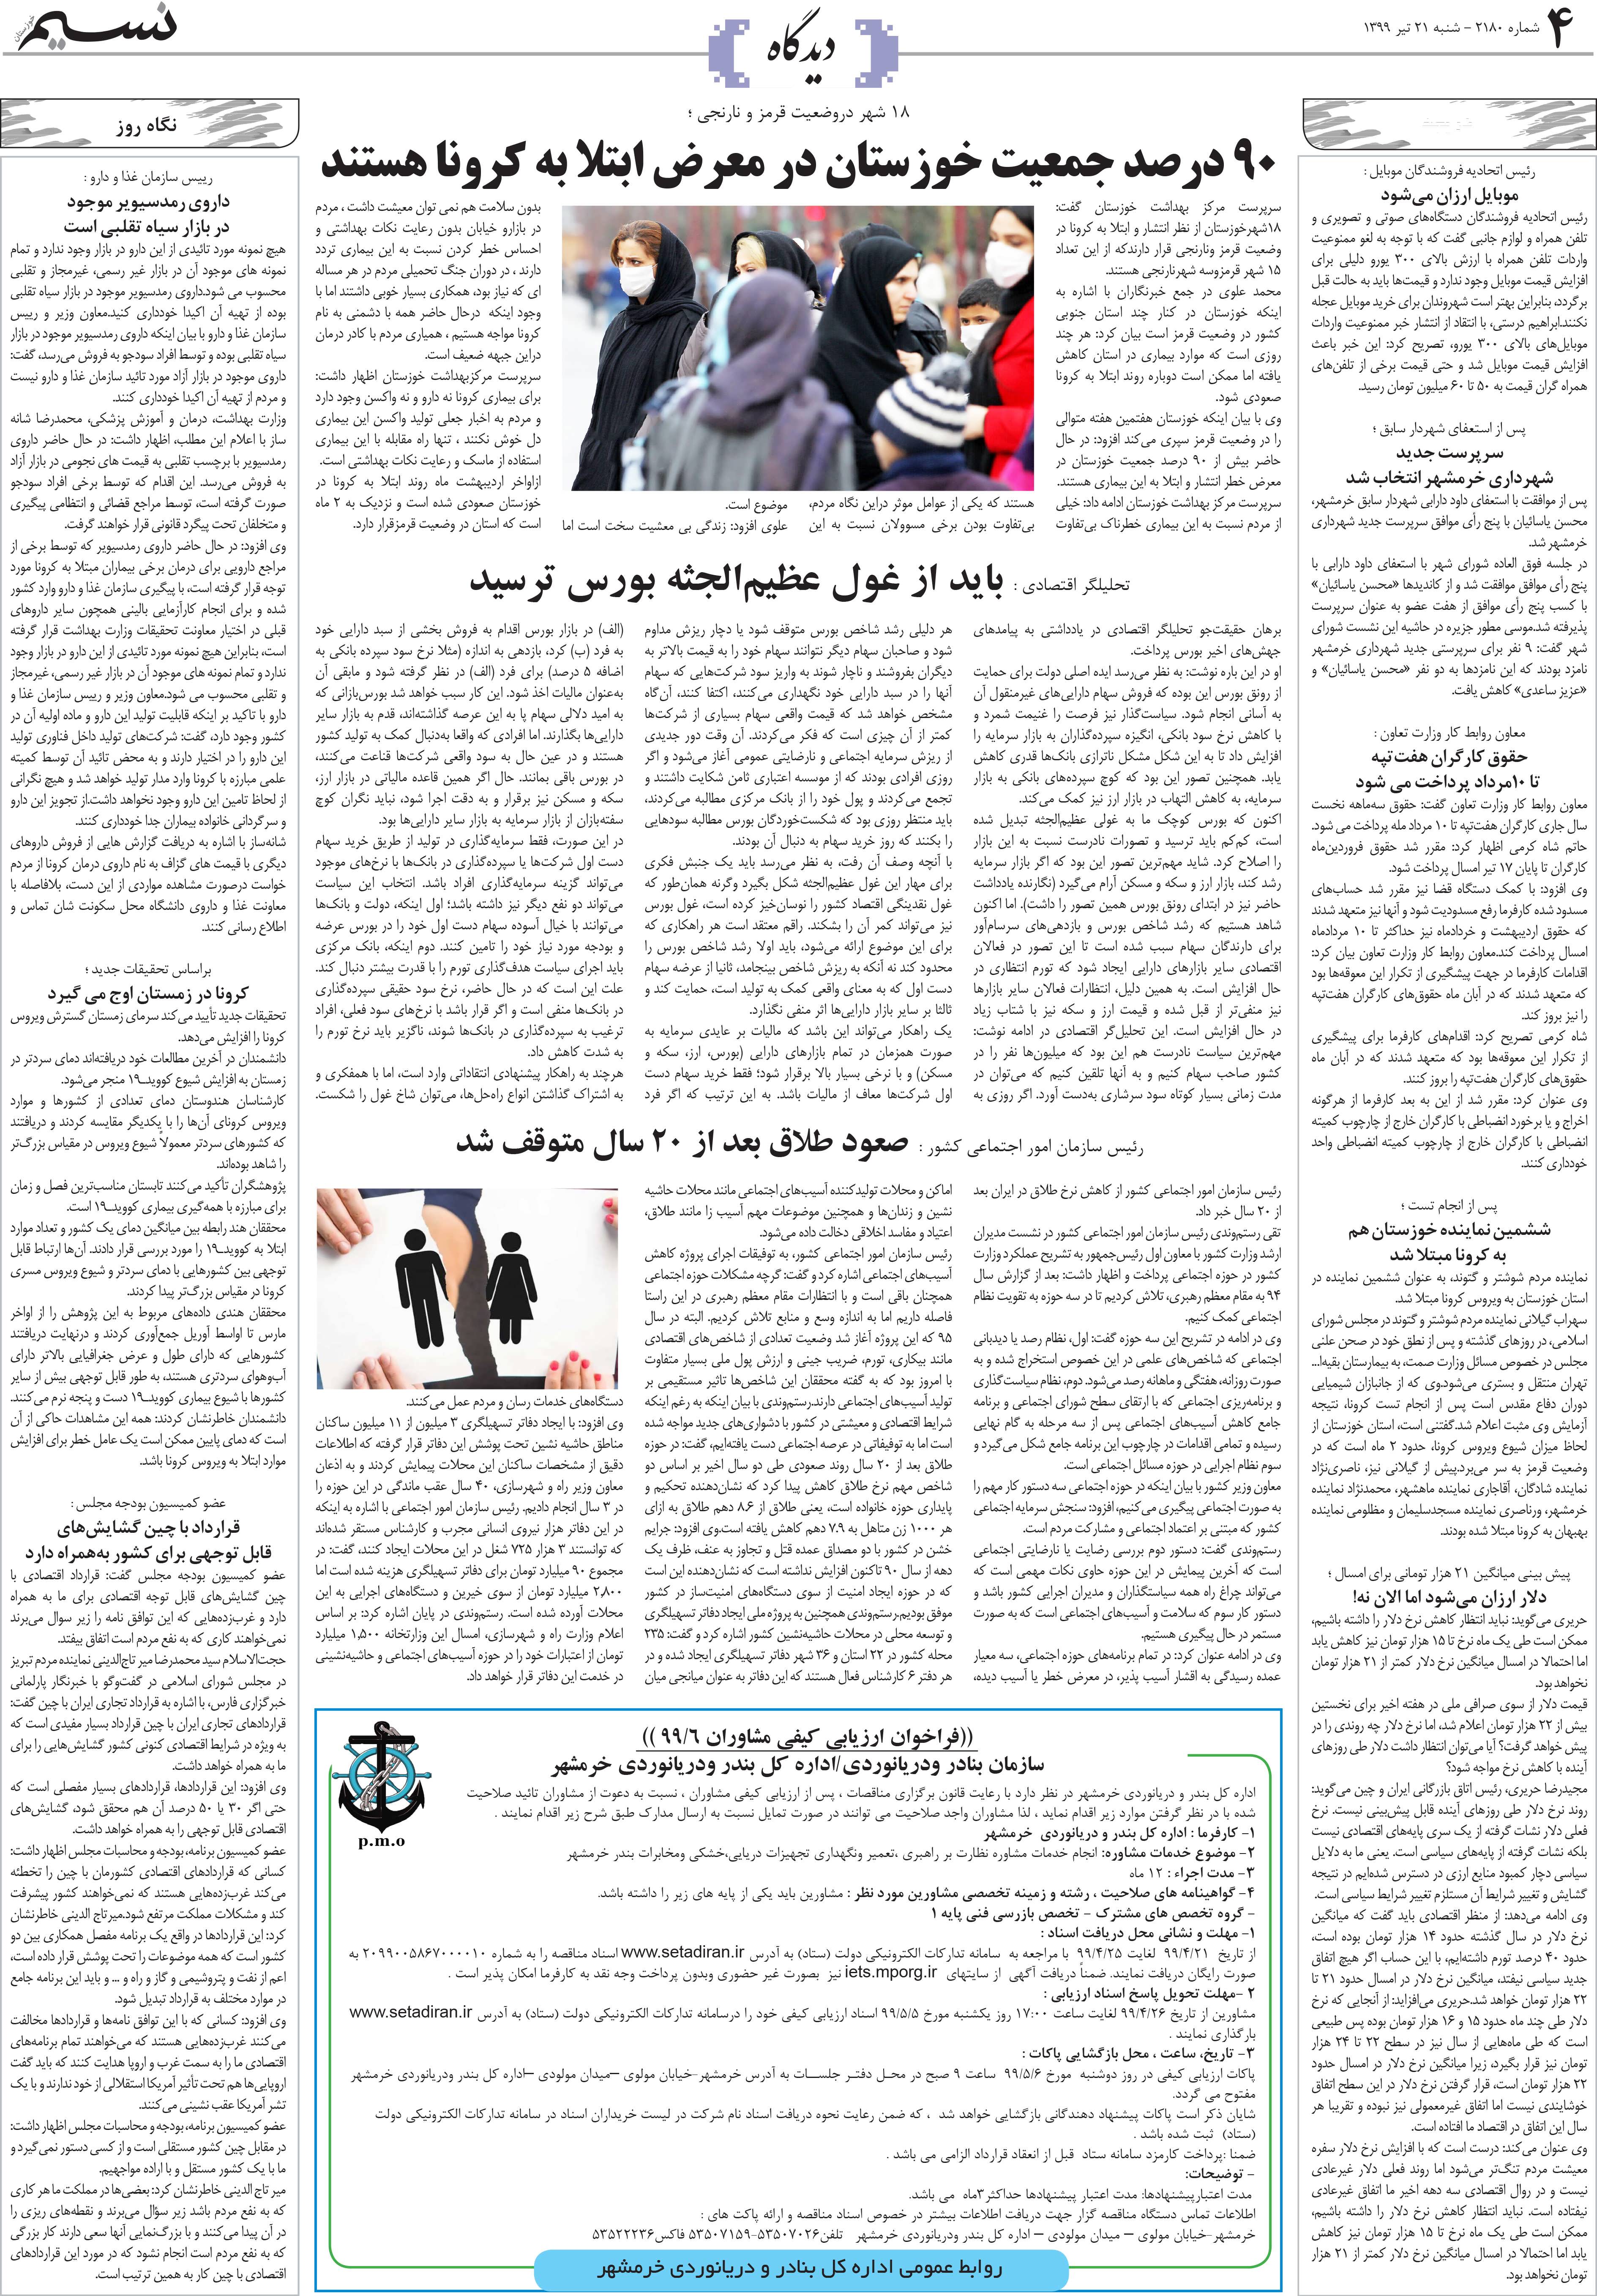 صفحه دیدگاه روزنامه نسیم شماره 2180